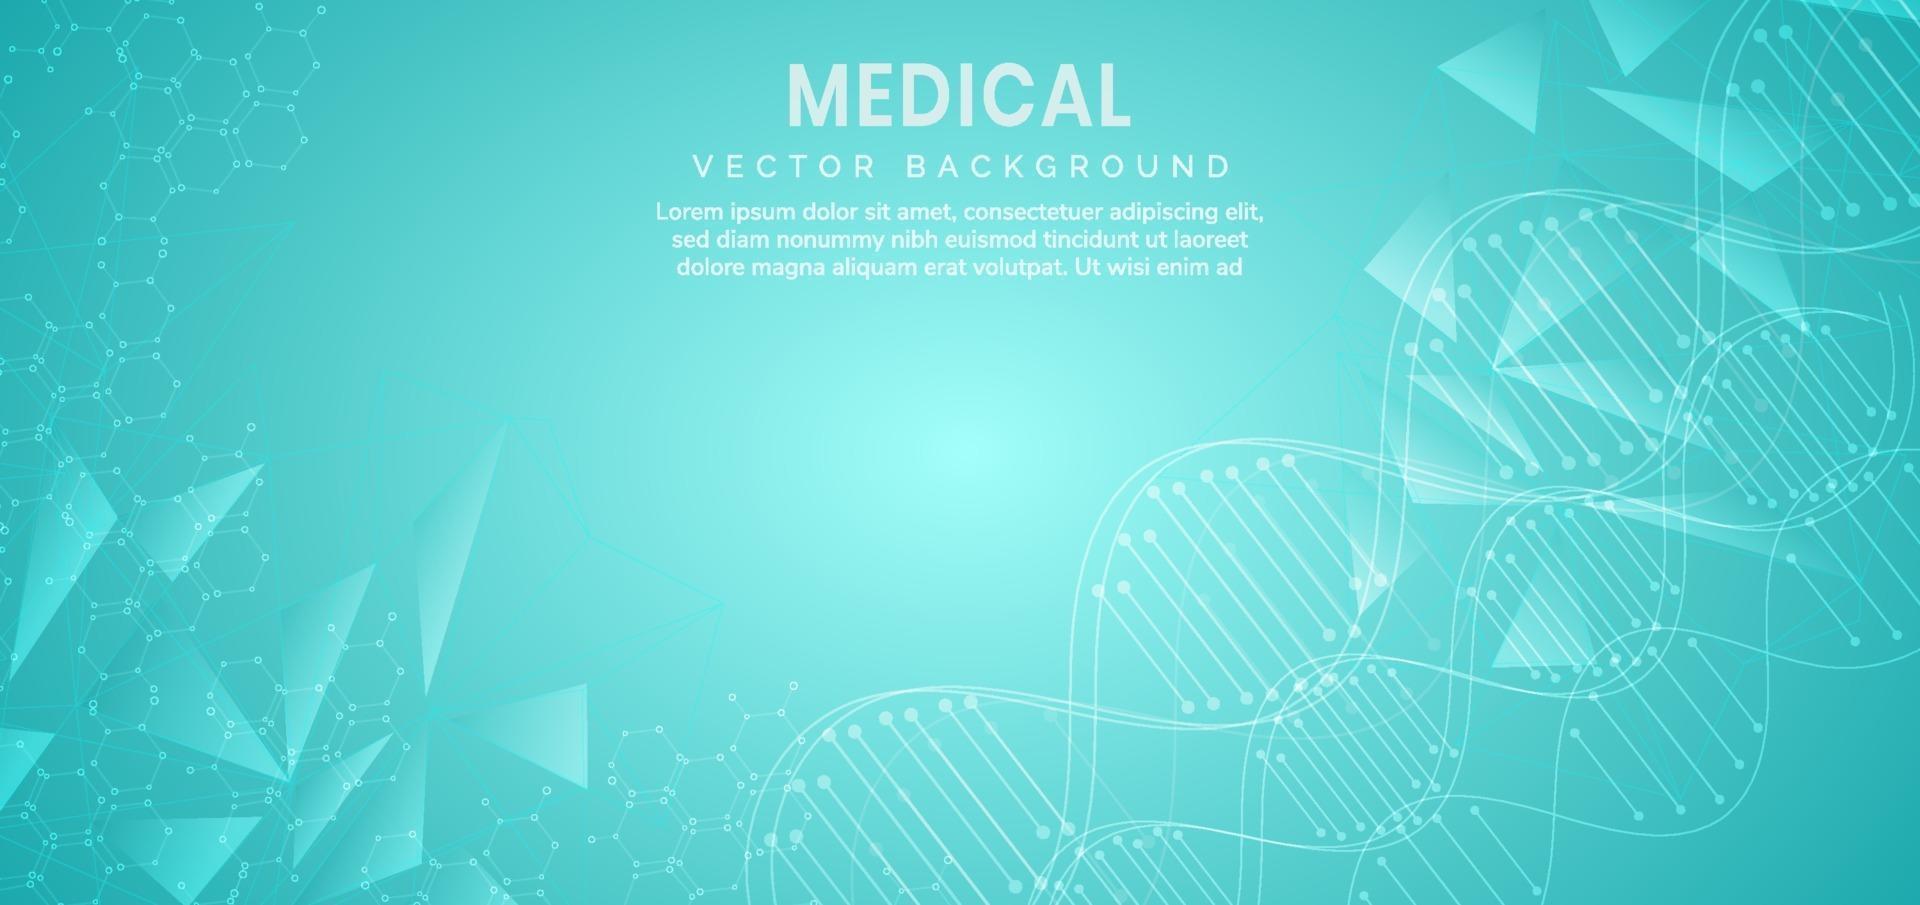 Vorlage für Wissenschafts- und Technologiekonzept oder Banner mit DNA-Molekülen. vektor